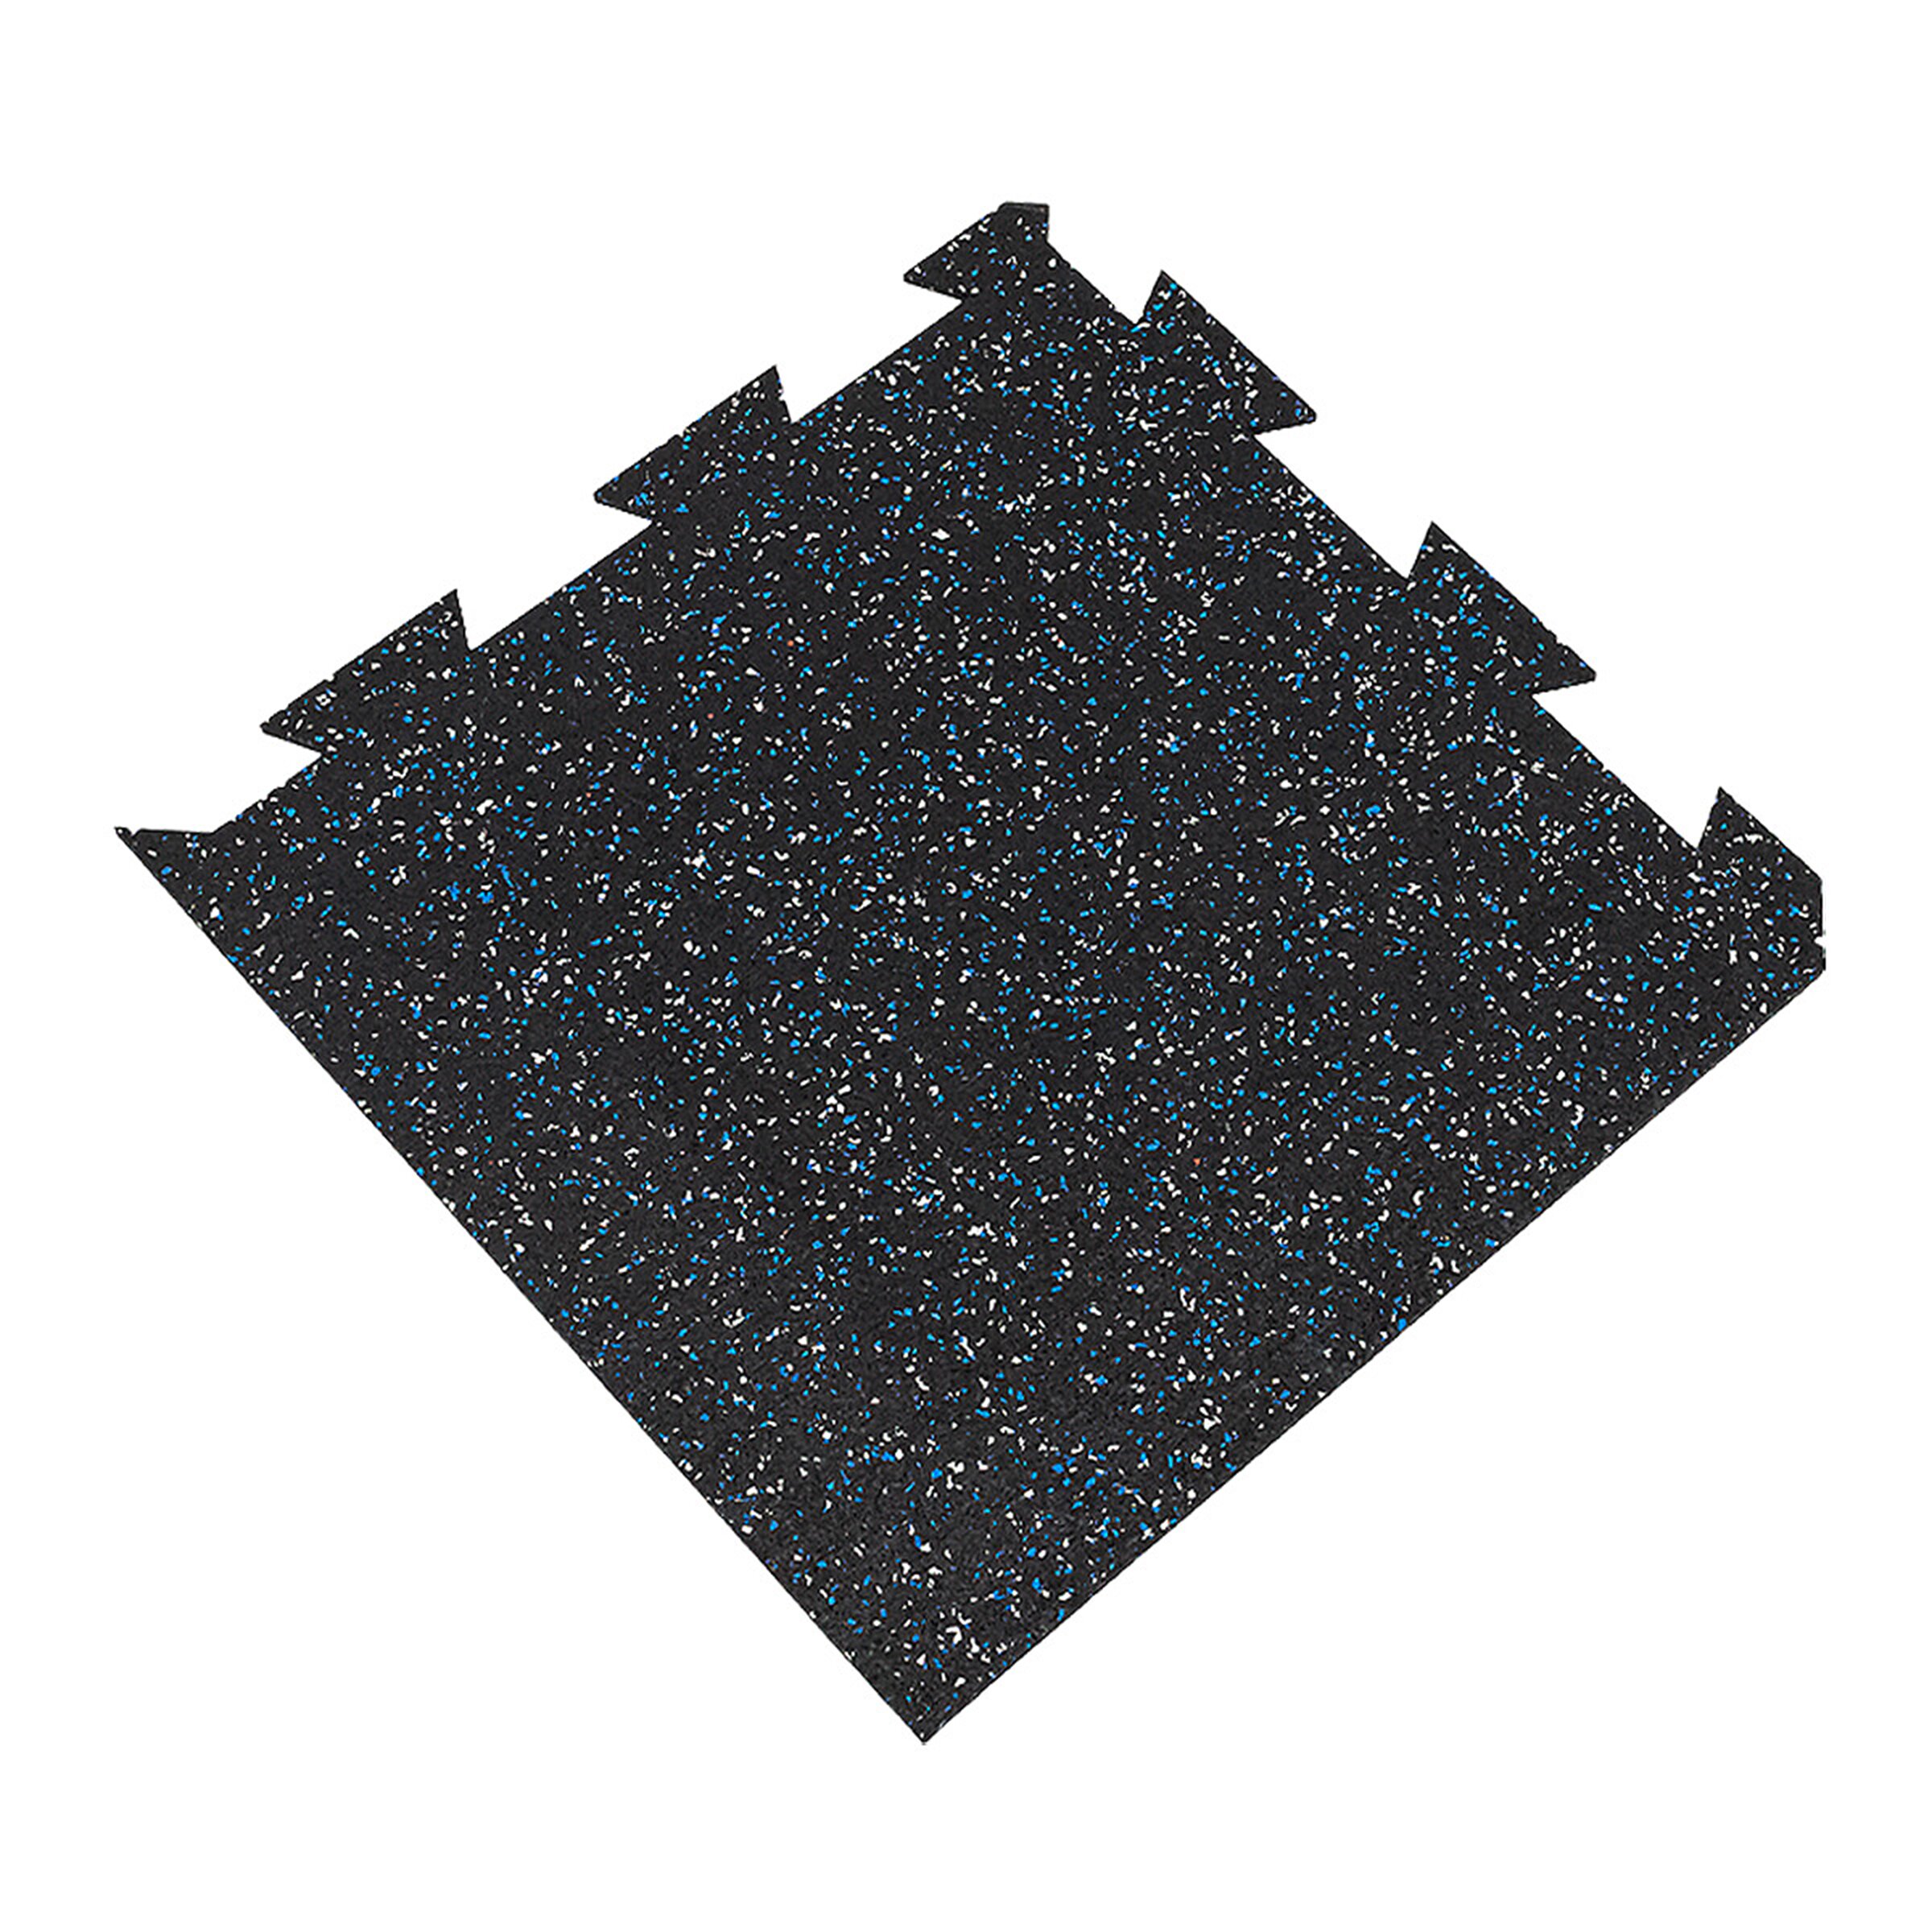 Čierno-bielo-modrá gumová modulová puzzle dlažba (roh) FLOMA FitFlo SF1050 - dĺžka 50 cm, šírka 50 cm, výška 1,6 cm